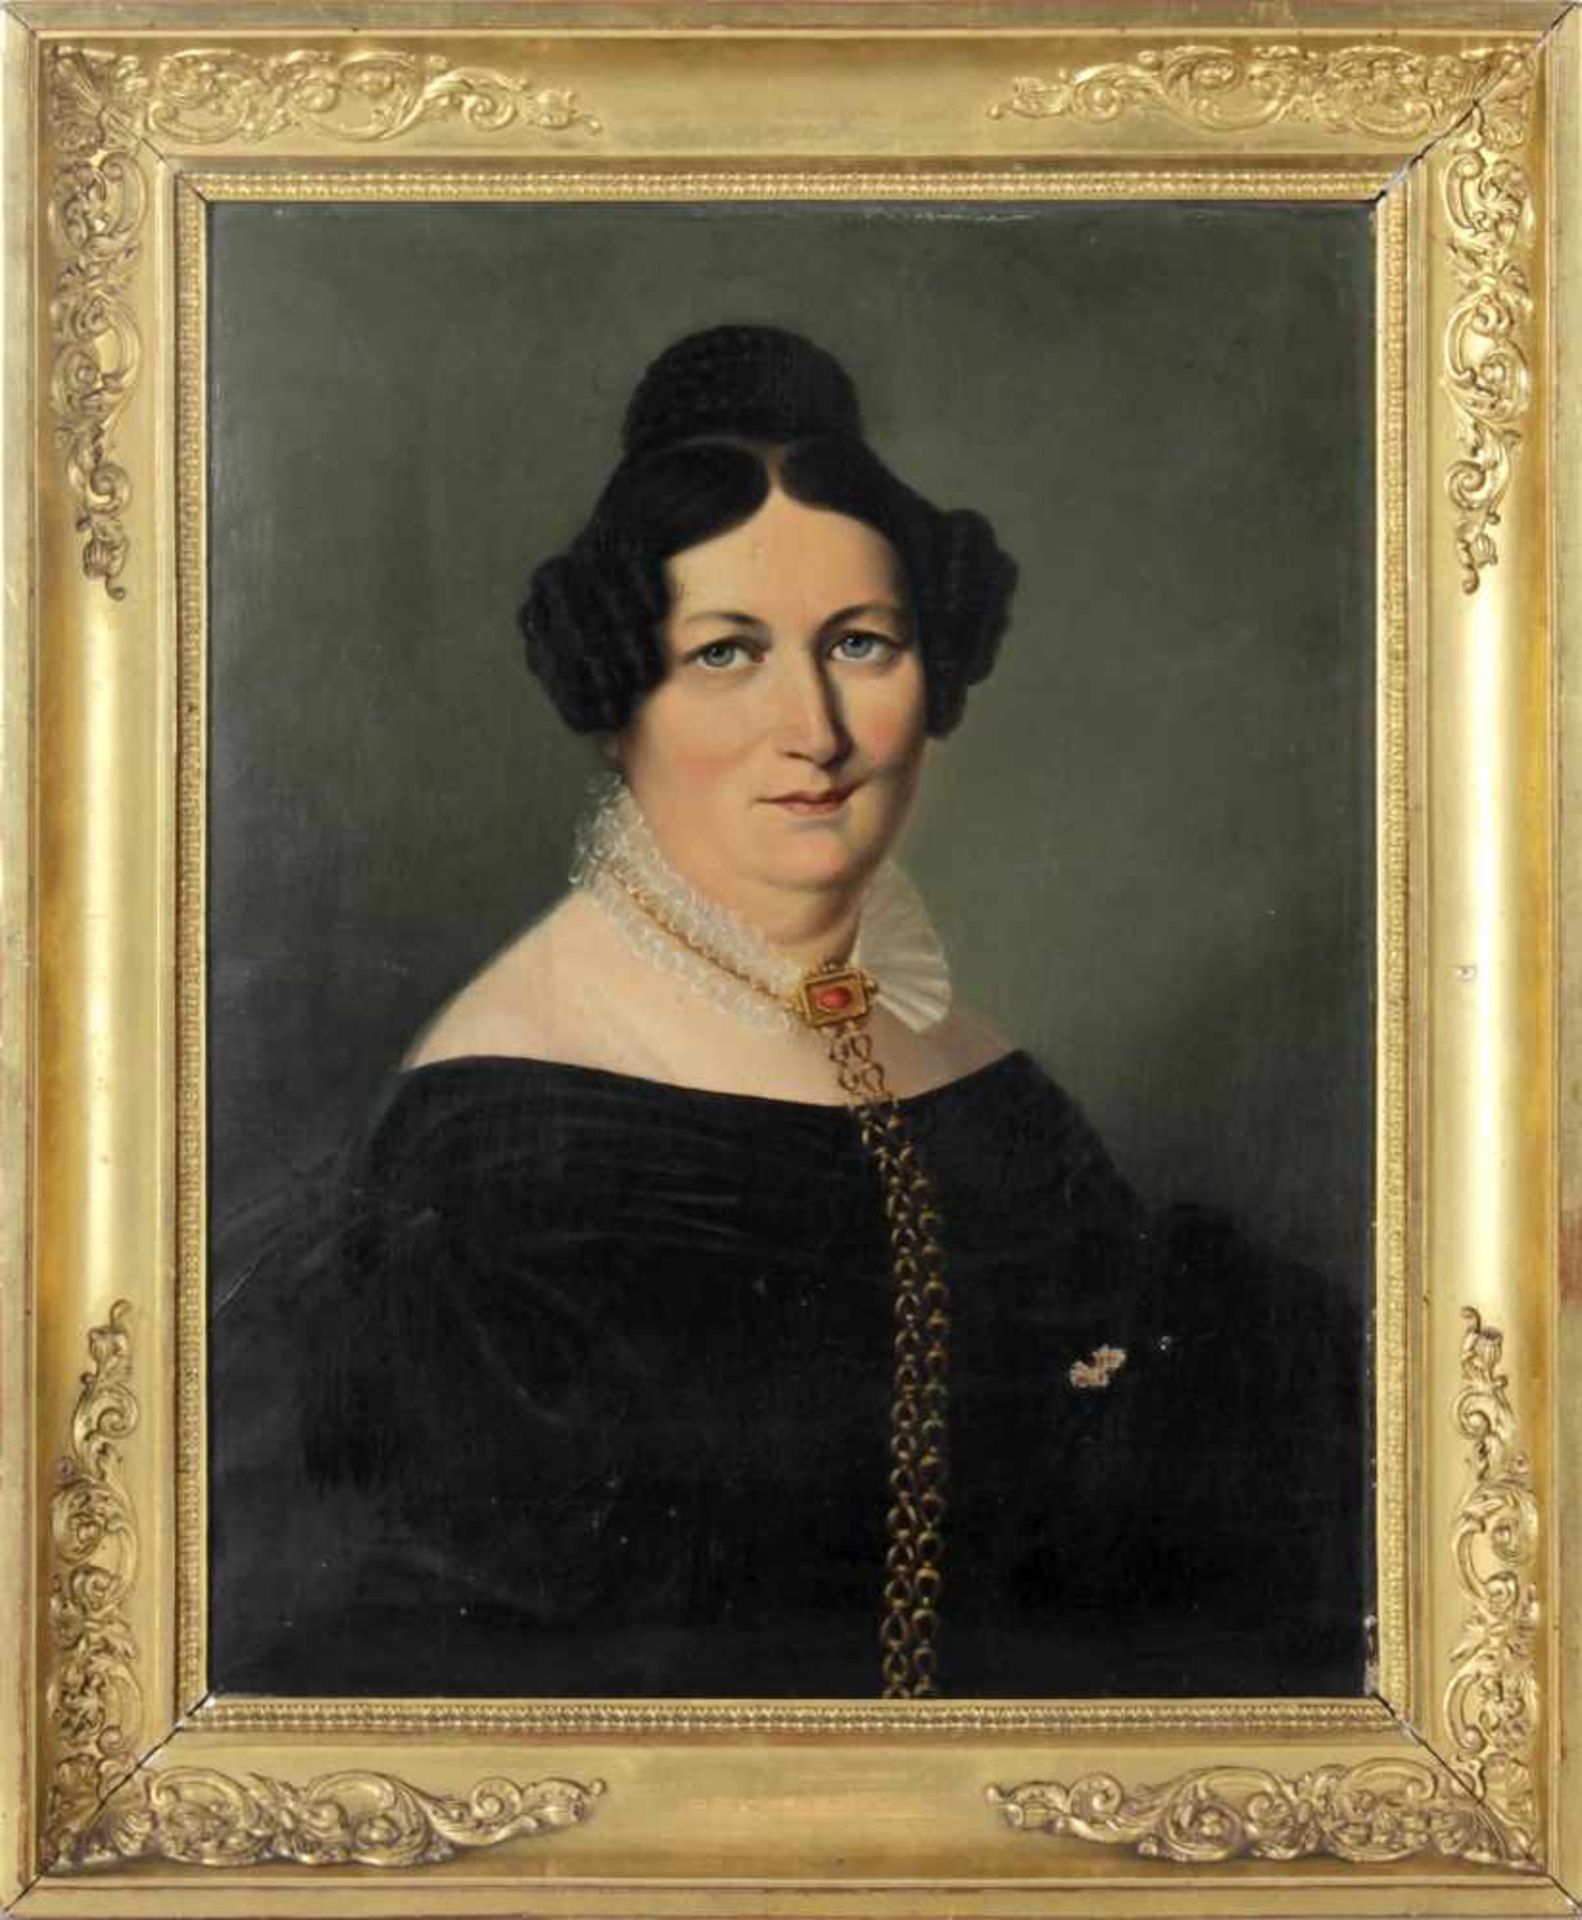 Porträt einer Dame mit goldener HalsketteBiedermeierzeit, ca. 1830, Öl auf Lwd., 41 x 32,5 cm, im